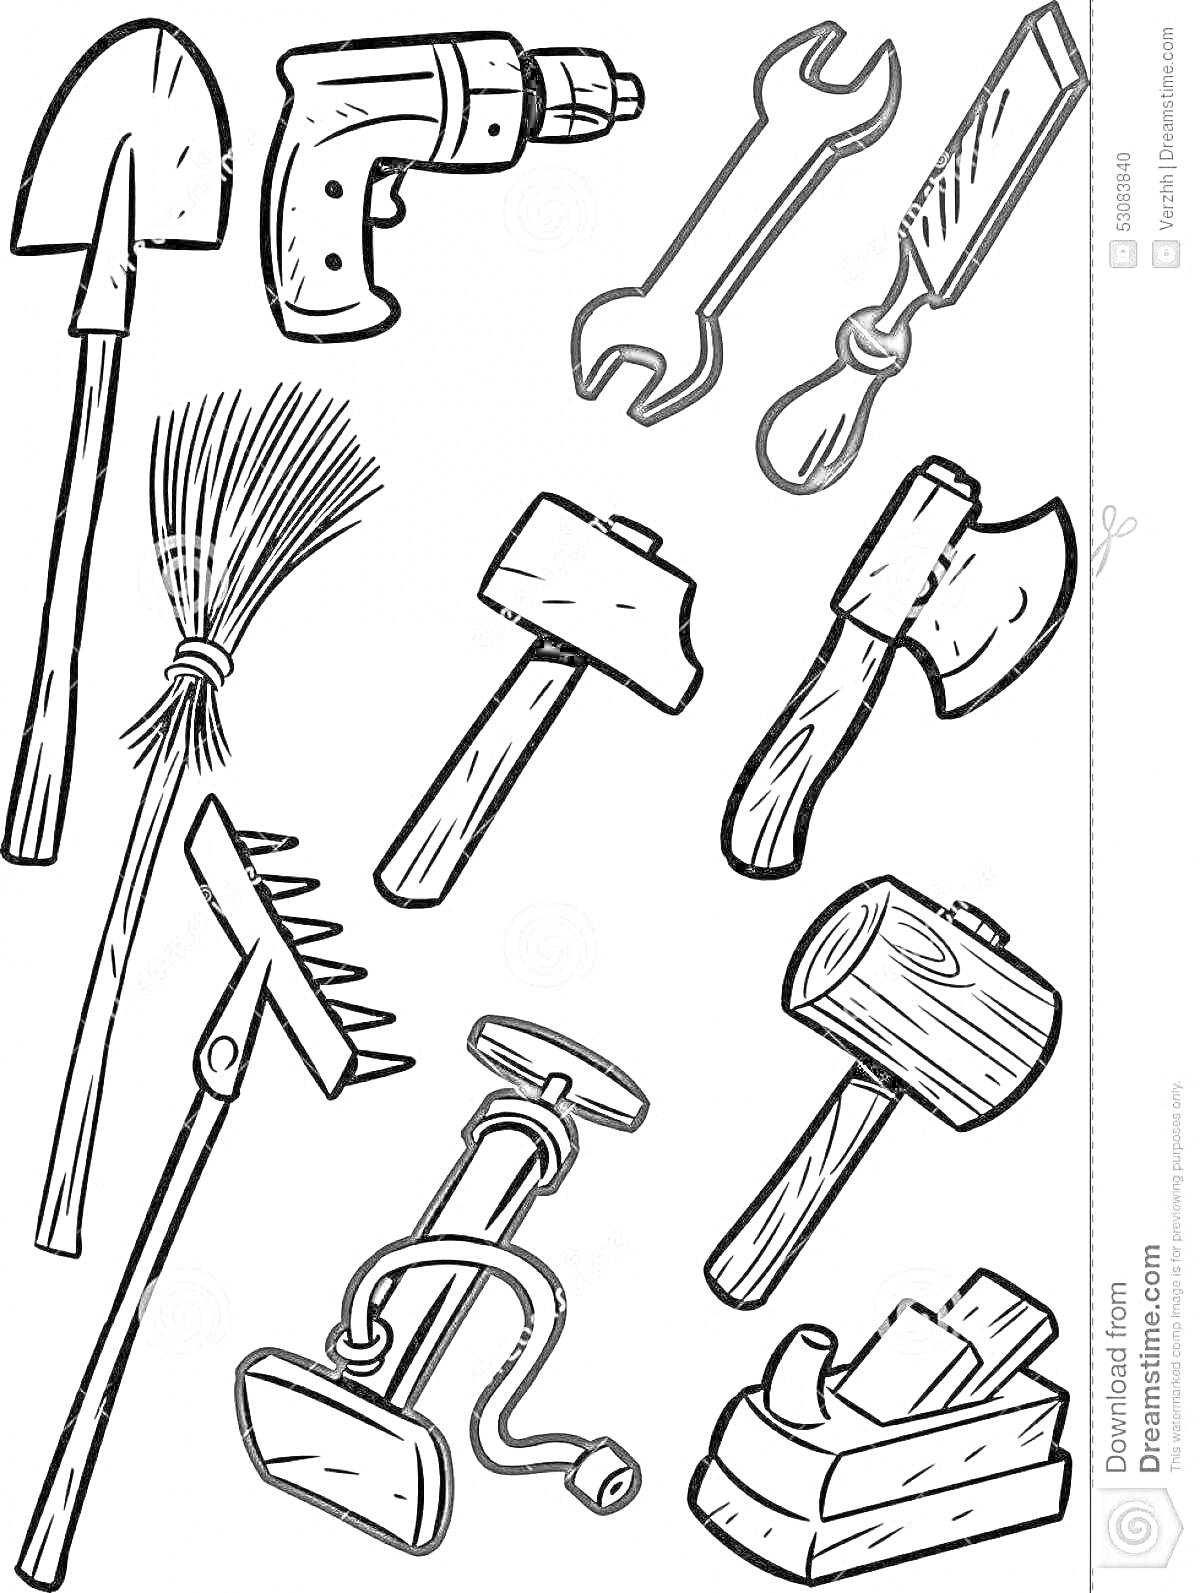 Лопата, дрель, гаечный ключ, стамеска, метла, молоток, топор, грабли, ножной насос, деревянный молоток, рубанок